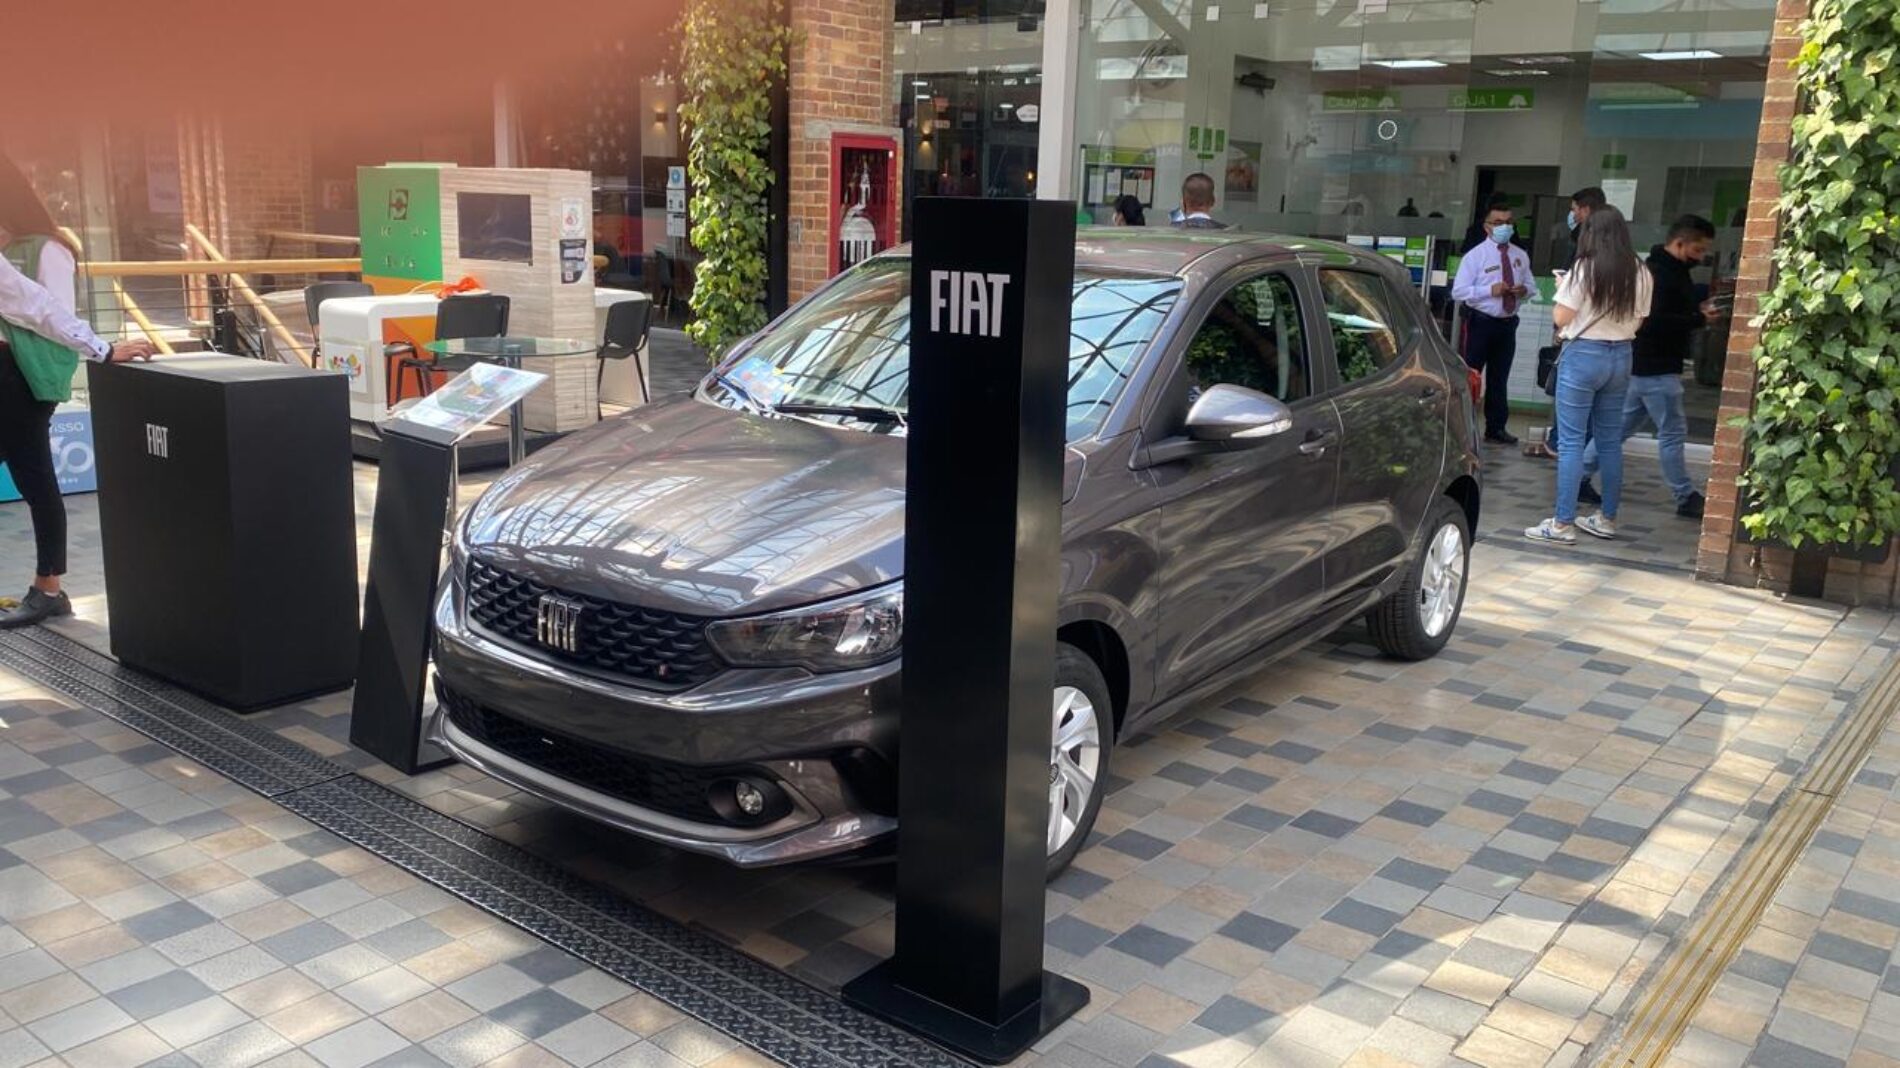 Exhibición de Jeep y Fiat en el C.C Plaza de las Américas